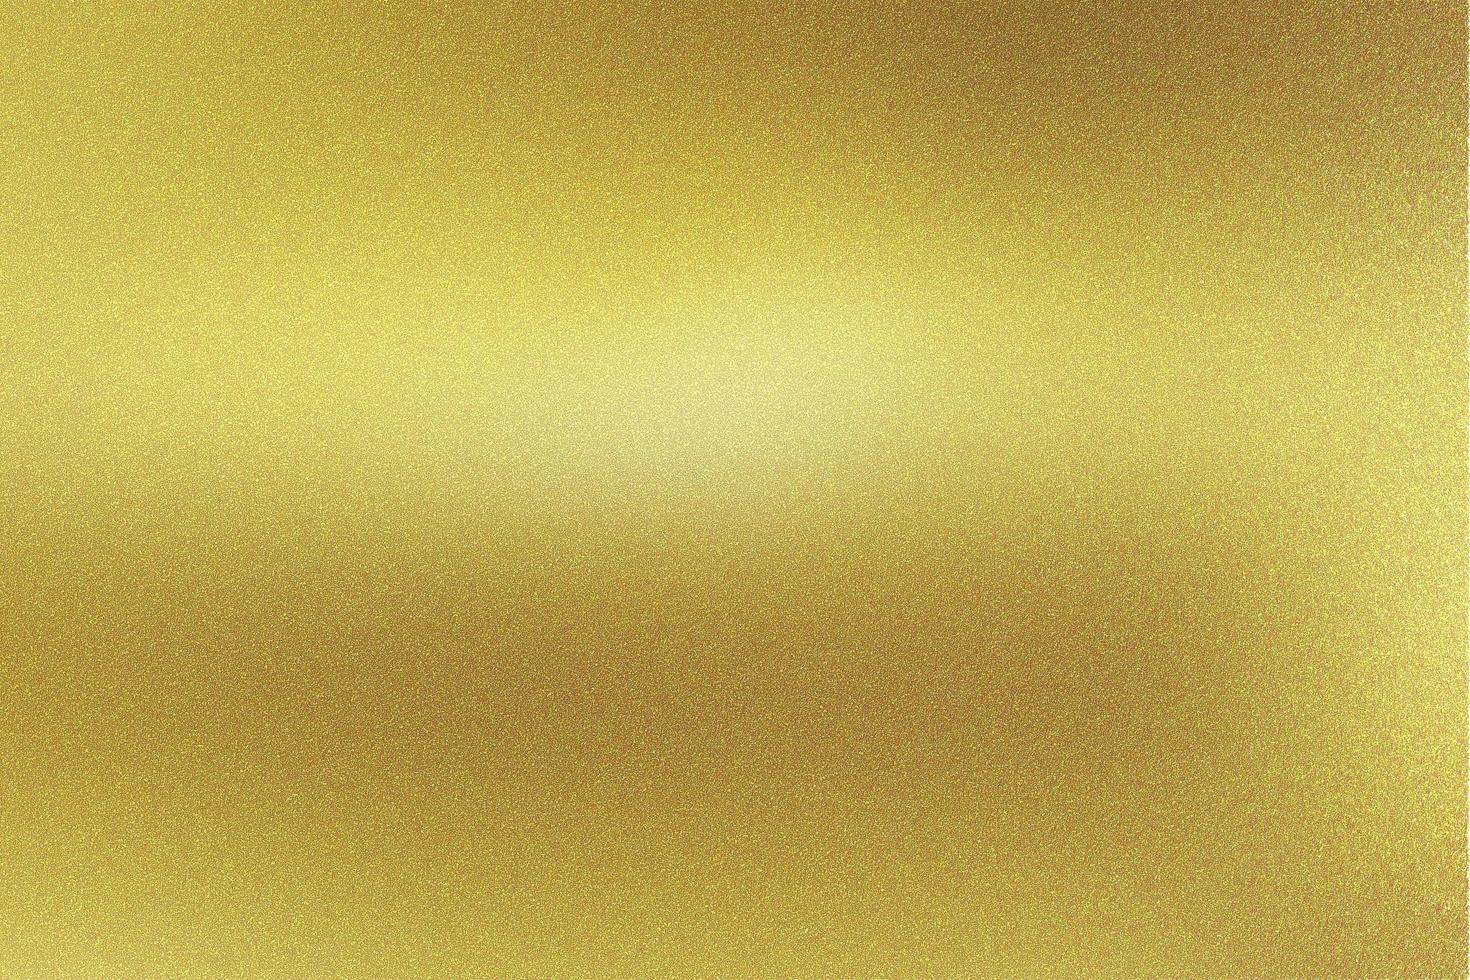 goudfolie glitter metalen muur met kopie ruimte, abstracte textuur achtergrond foto